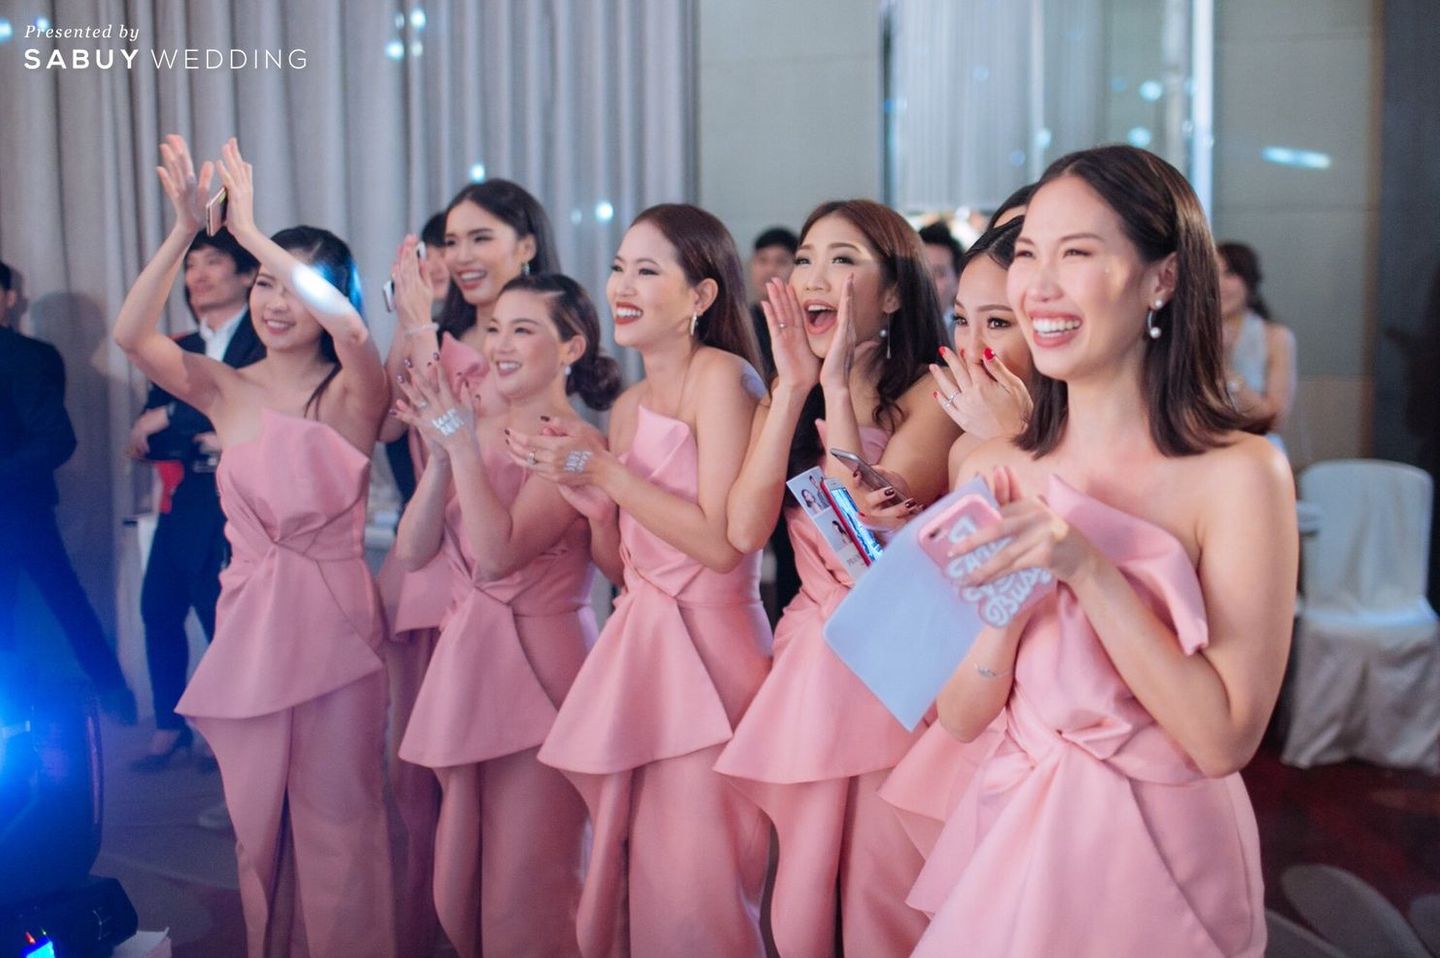 เพื่อนเจ้าสาว,ชุดเพื่อนเจ้าสาว รีวิวงานแต่งงาน Gen Y ดีไซน์ทุกจุดให้ถ่ายรูปสวยได้ สไตล์แซ่บซี๊ดดดดด @Bangkok Marriott Sukhumvit